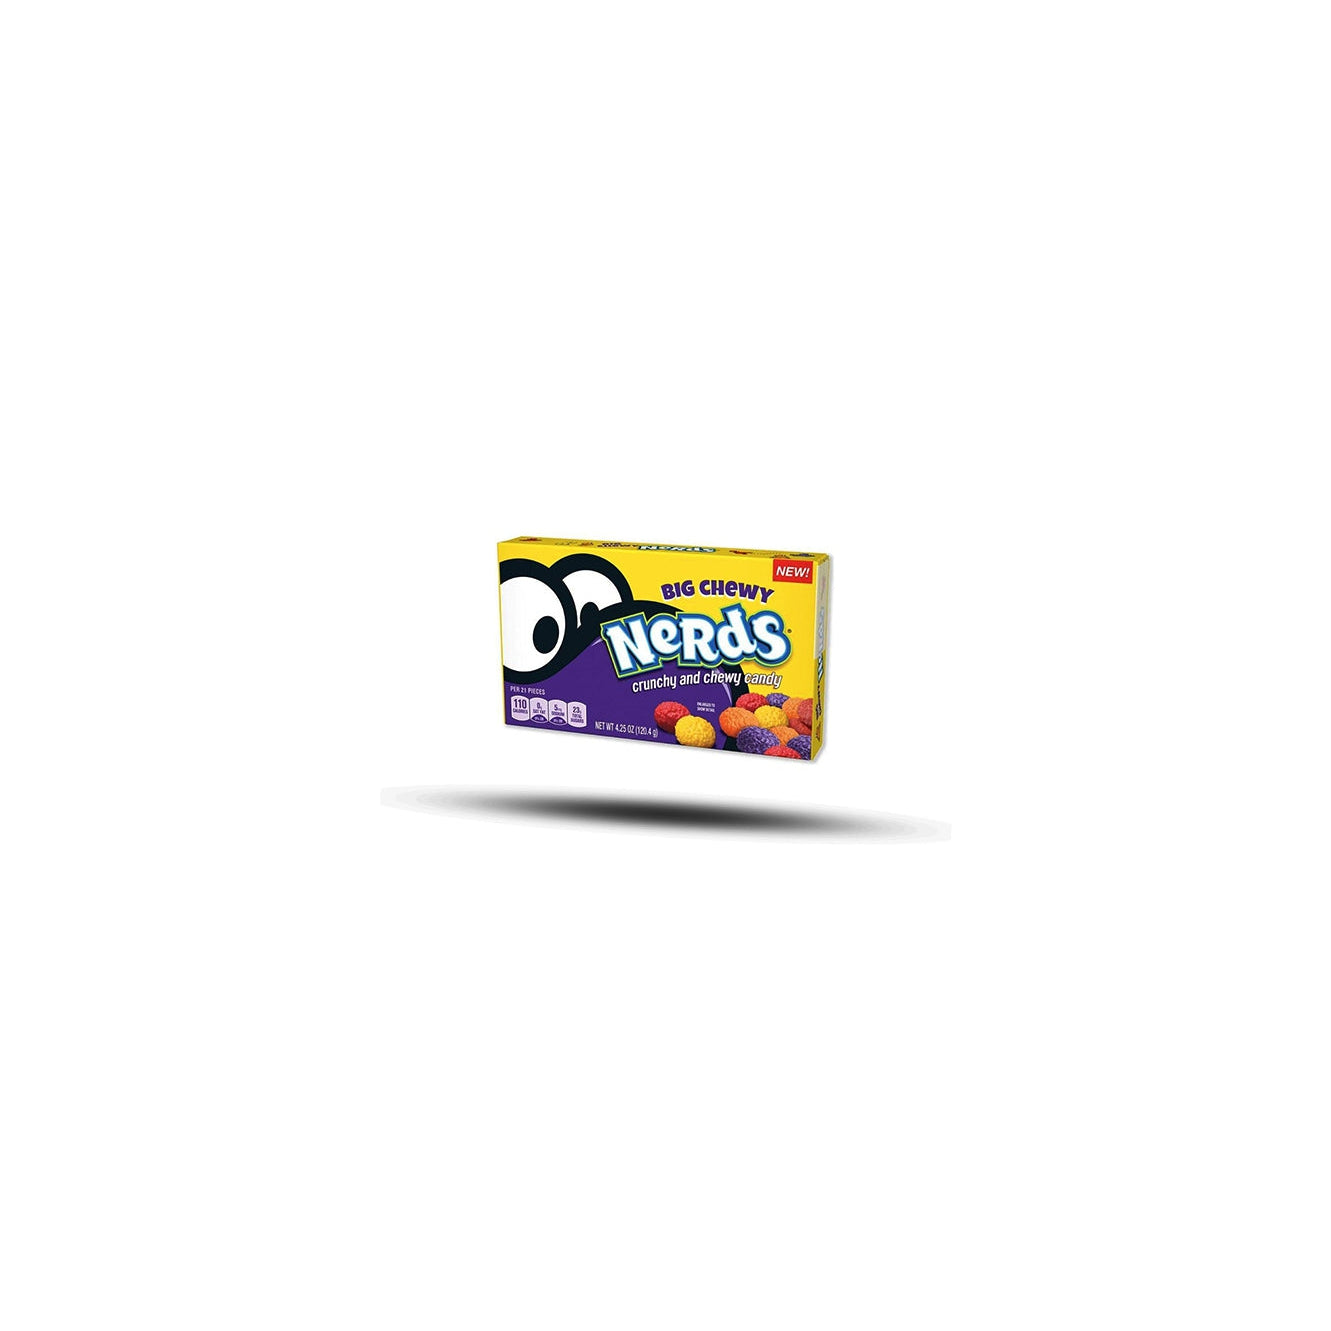 Nerds Candy - Big Chewy 120g-Ferrara Candy Company-SNACK SHOP AUSTRIA